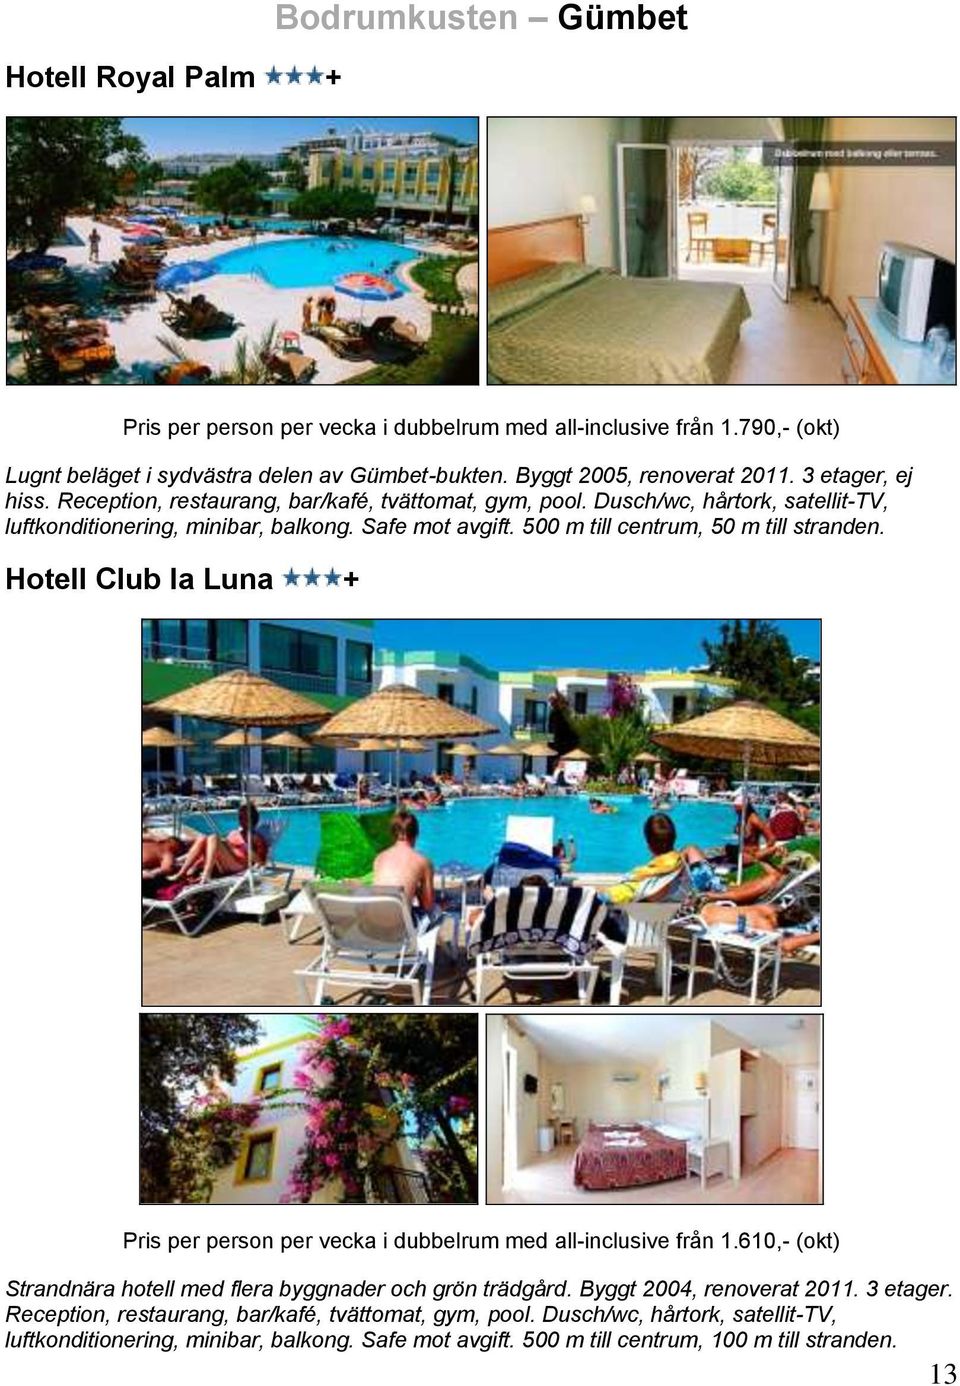 500 m till centrum, 50 m till stranden. Hotell Club la Luna + Pris per person per vecka i dubbelrum med all-inclusive från 1.610,- (okt) Strandnära hotell med flera byggnader och grön trädgård.